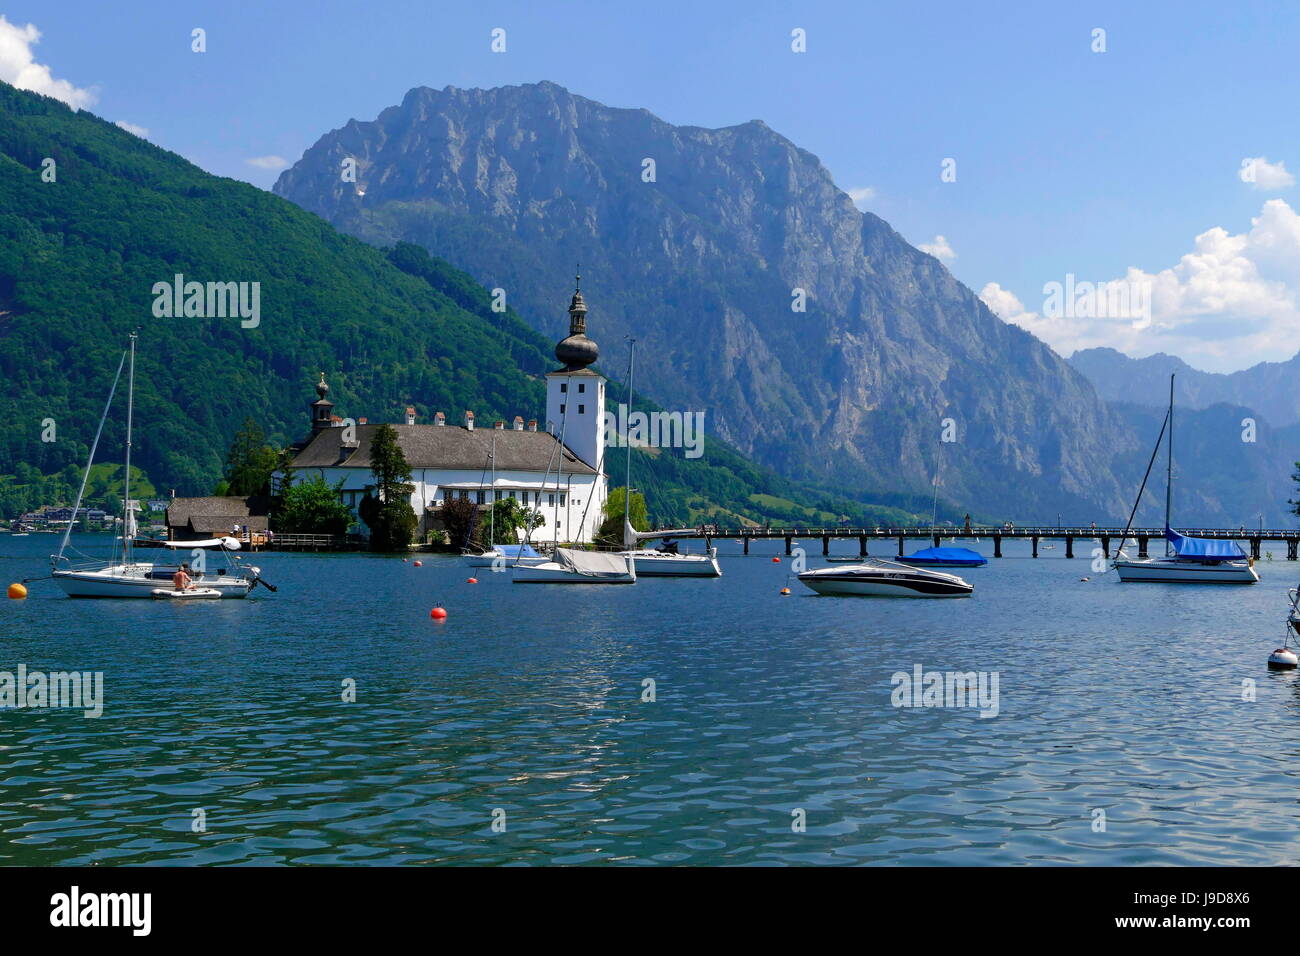 Ort Castle dans la ville de Gmunden sur le lac Traunsee, Salzkammergut, Haute Autriche, Autriche, Europe Banque D'Images